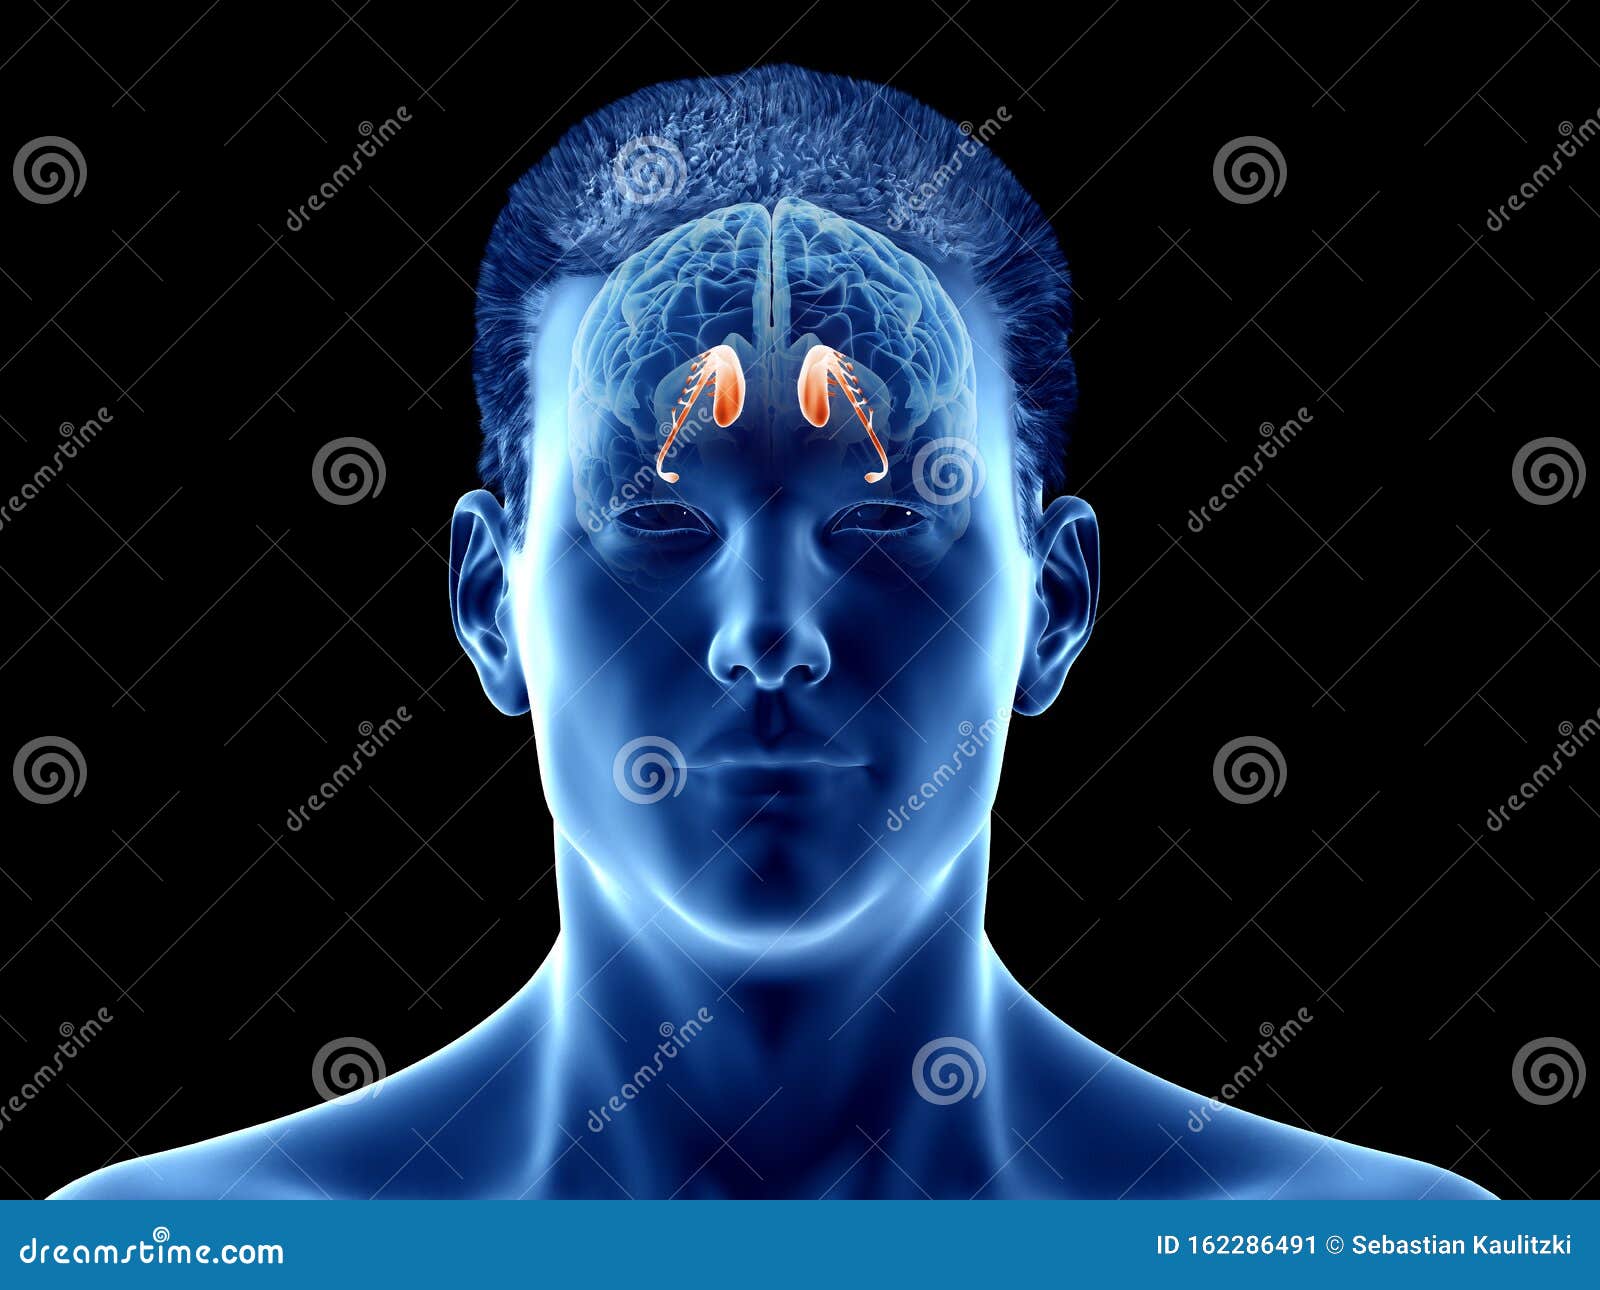 the brain anatomy - the caudate nucleus